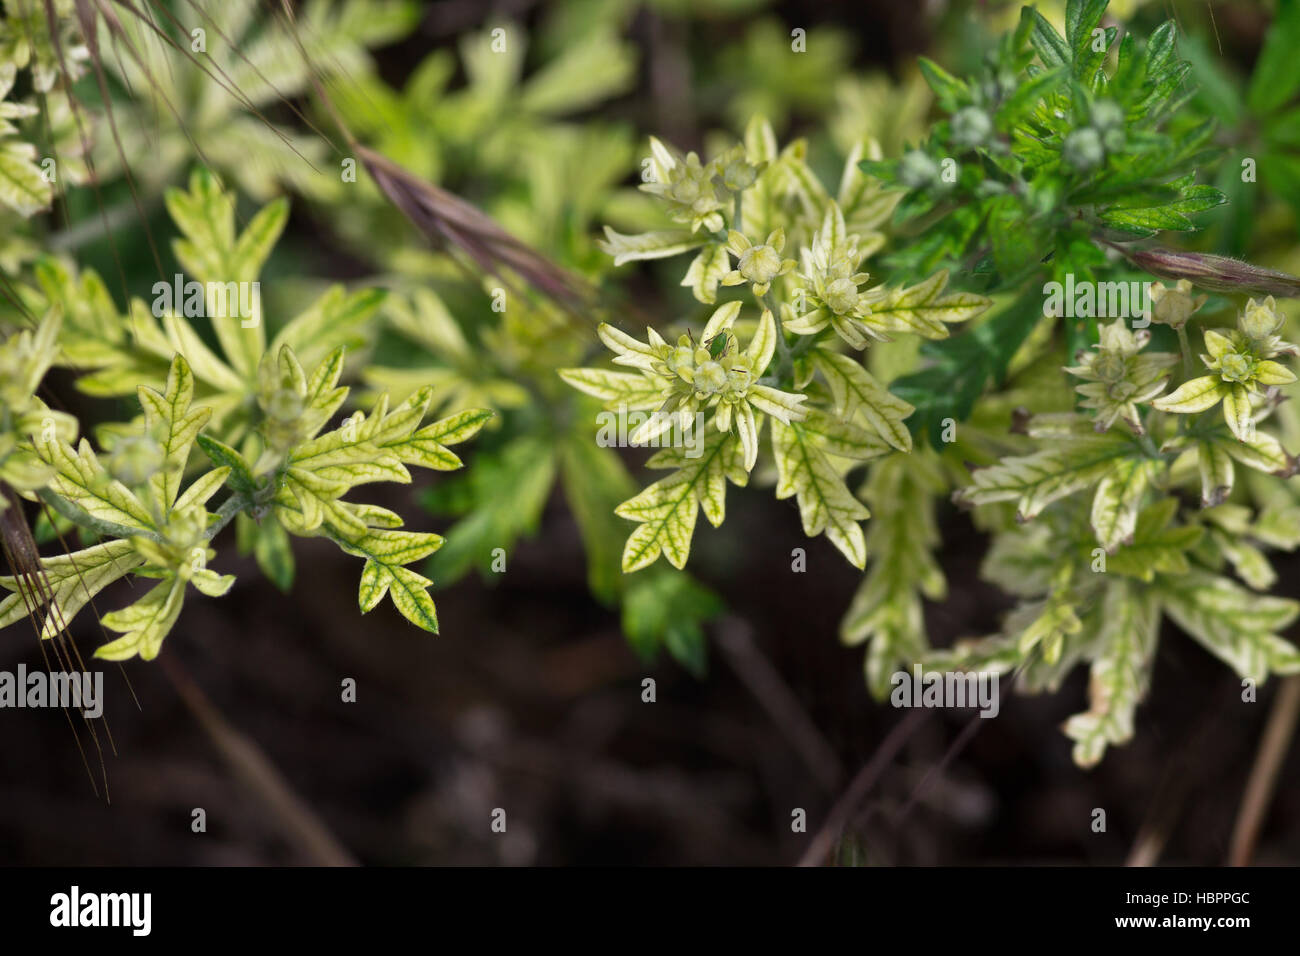 Grünpflanze Closeup auf dunklem Hintergrund Stockfoto